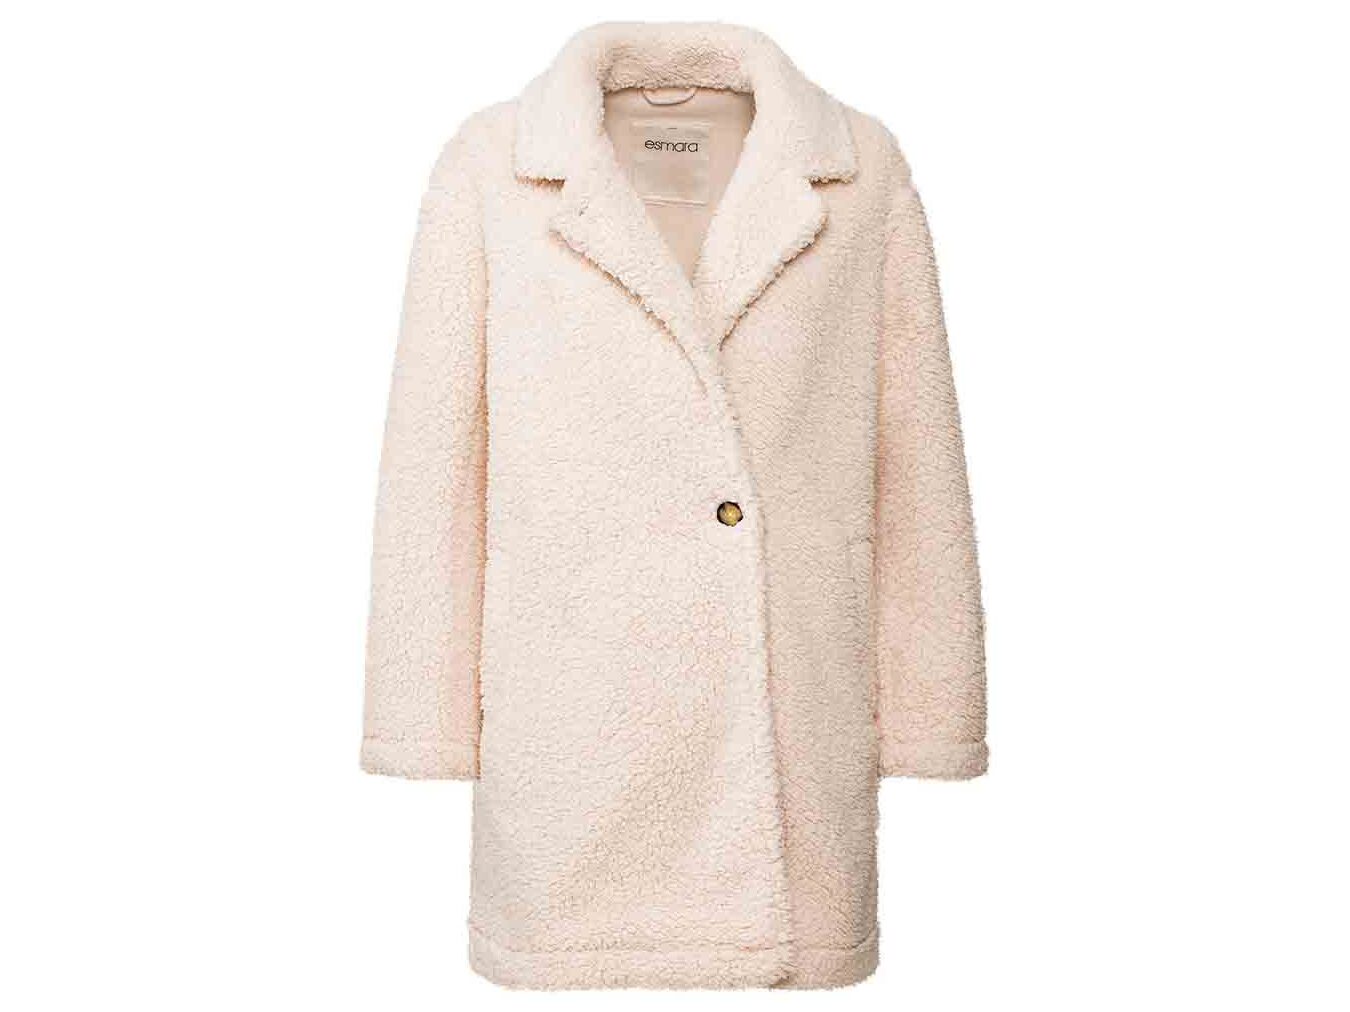 ¿Cuánto cuesta realmente un abrigo en una tienda de moda?